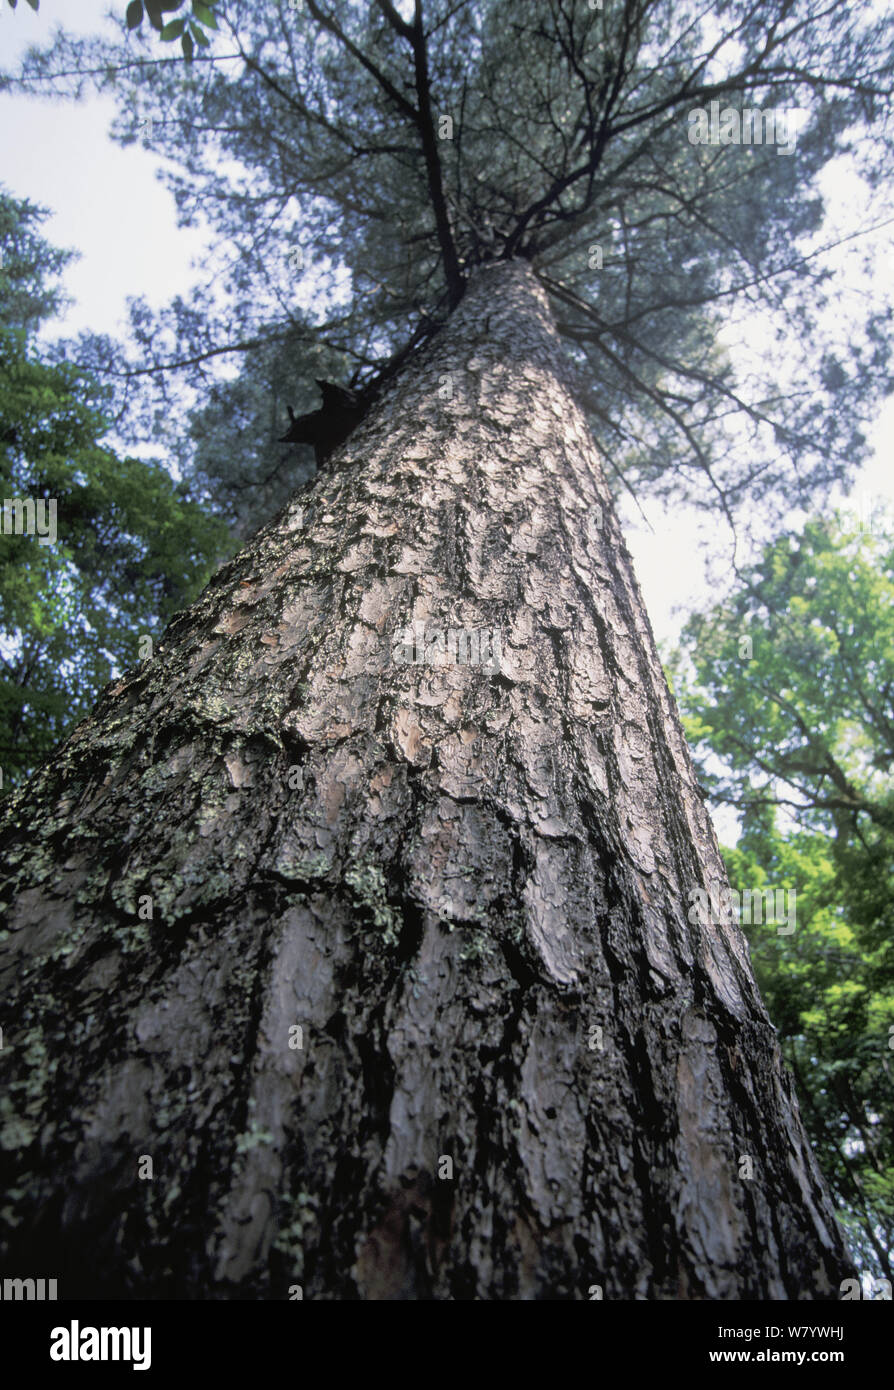 Korean pine tree (Pinus koraiensis) low angle view of trunk, Amur Region, Russia. Stock Photo